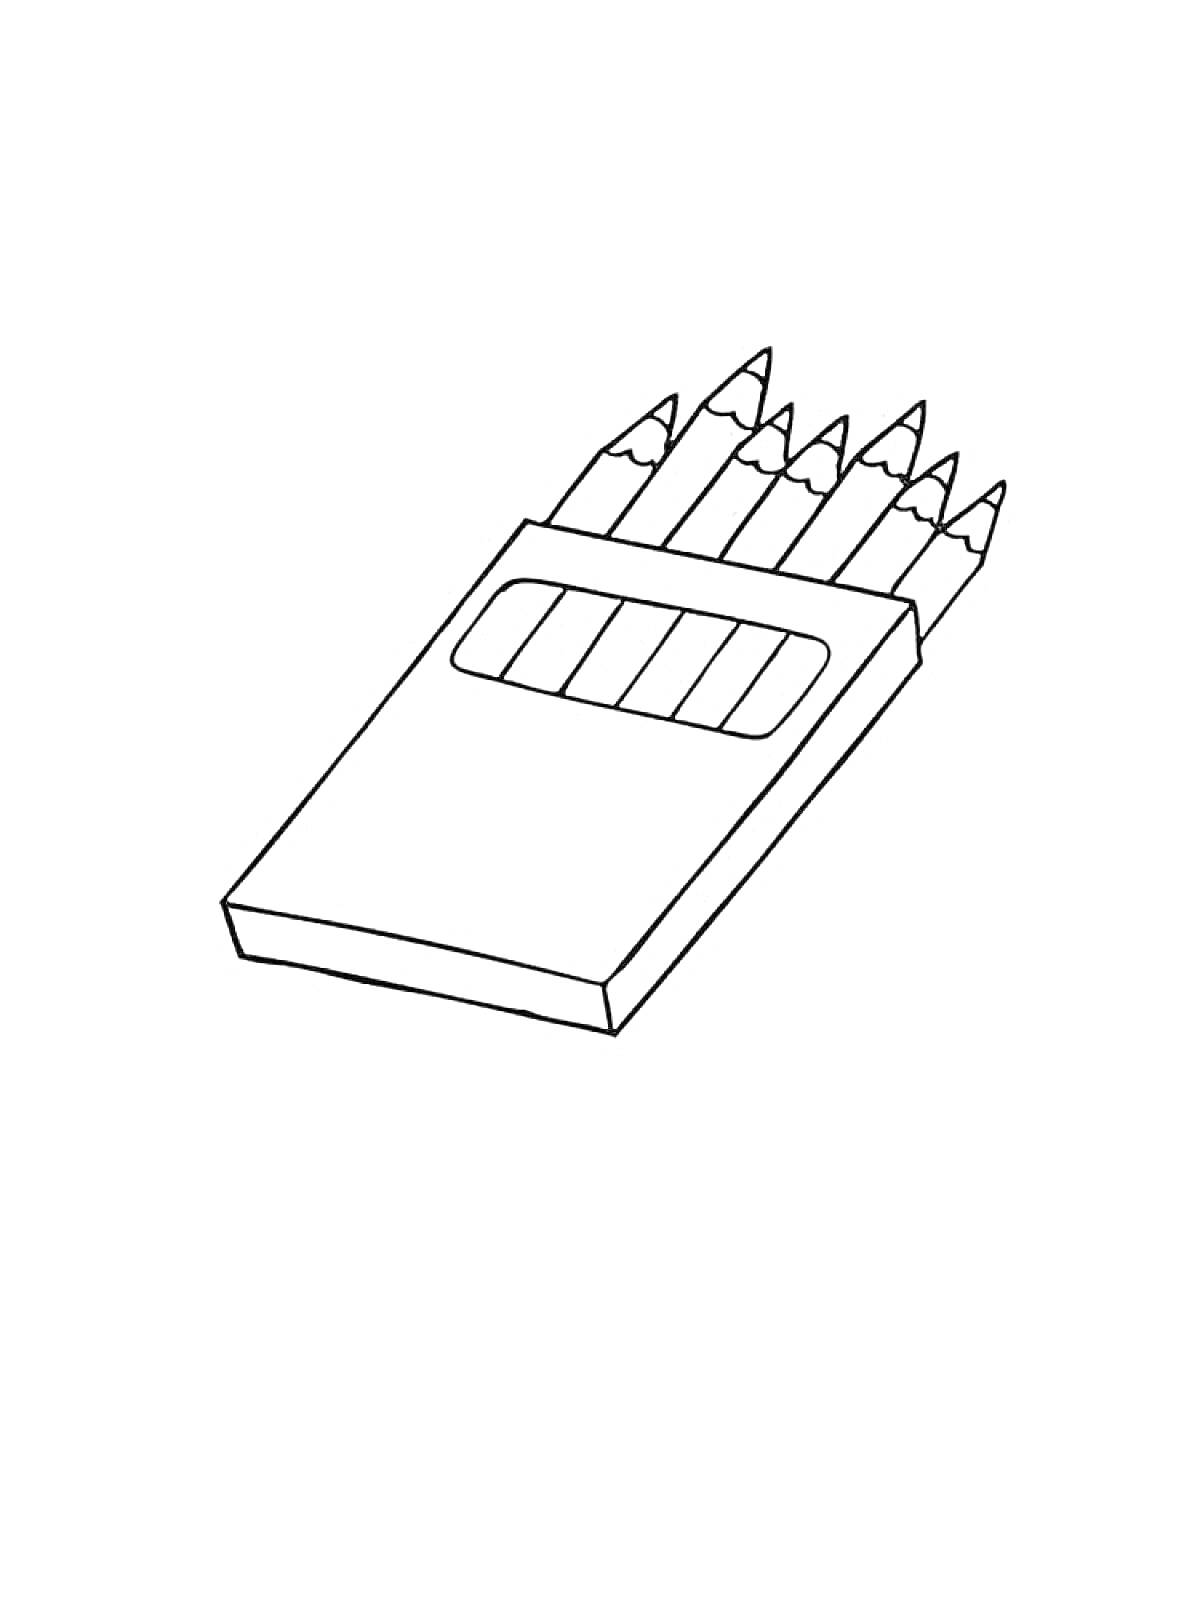 Раскраска Коробка с карандашами, содержащая шесть карандашей